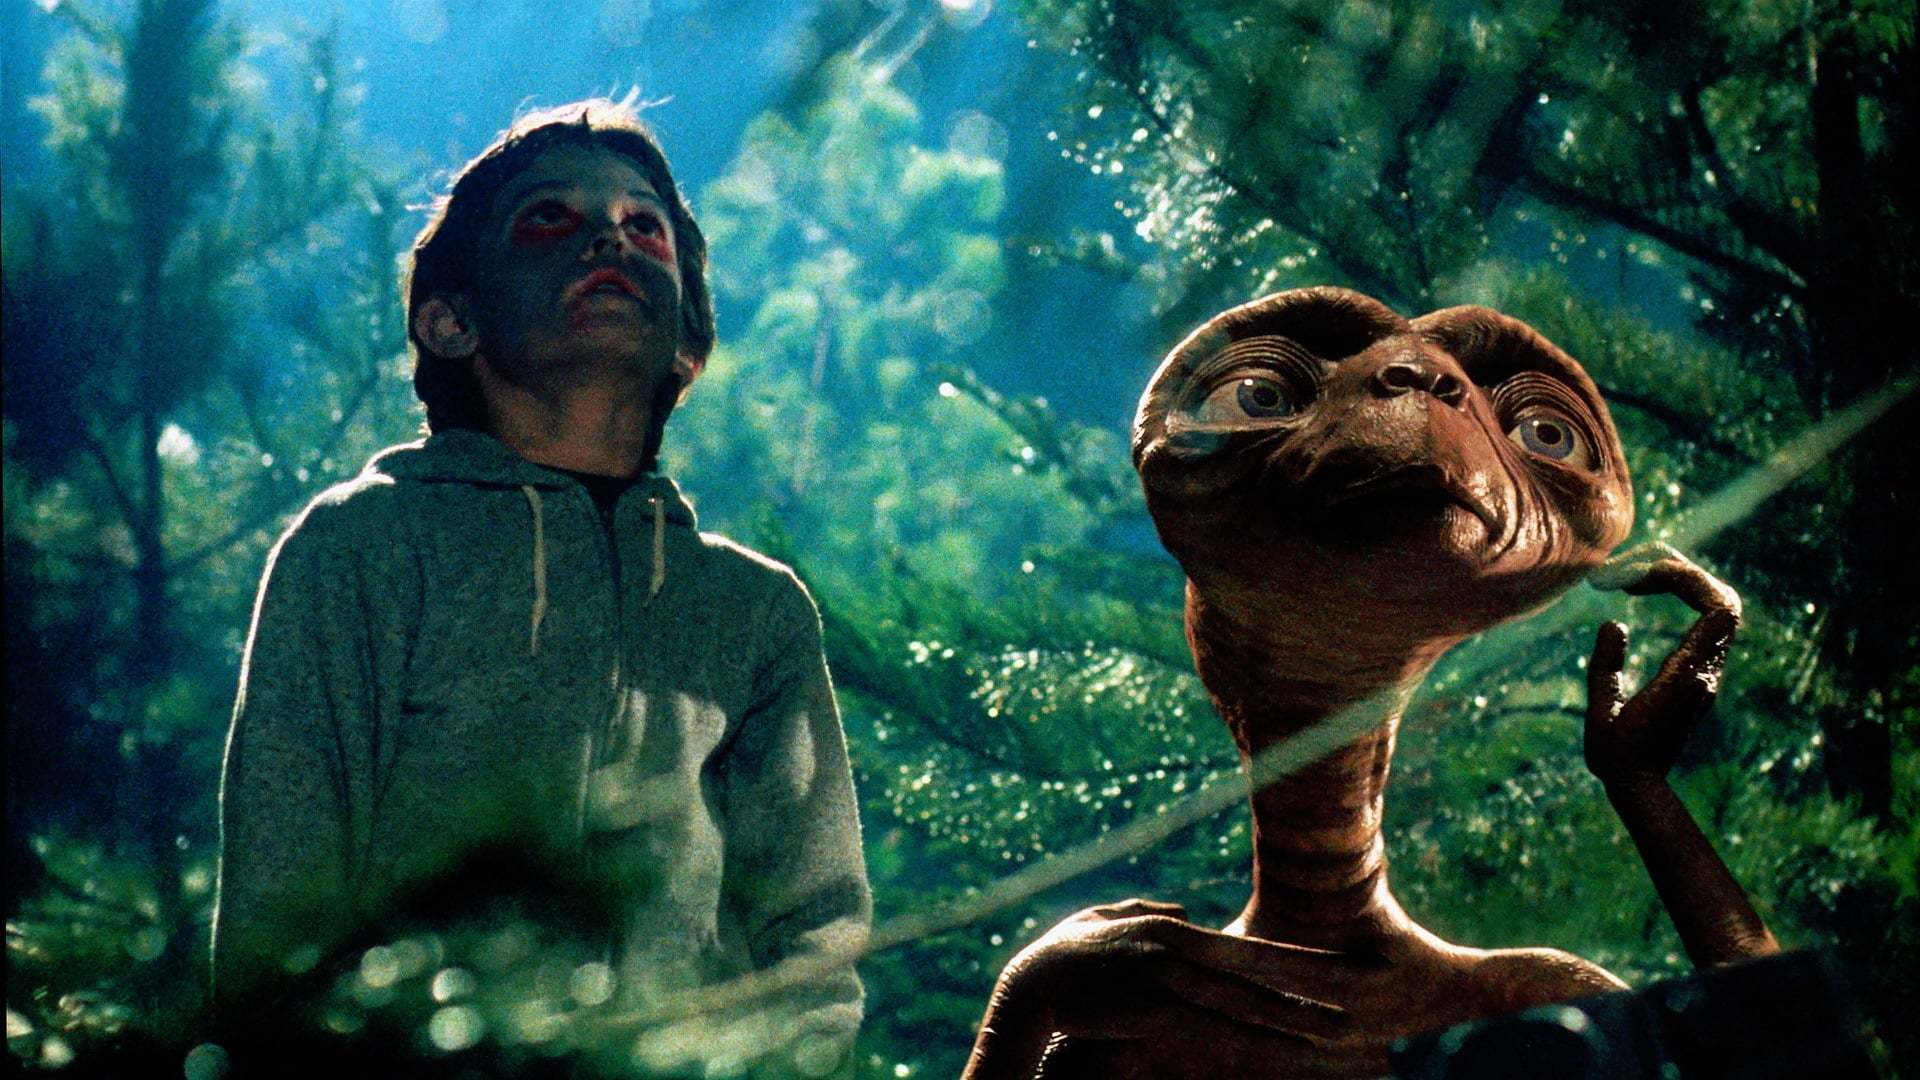 უცხოპლანეტელი / E.T. the Extra-Terrestrial